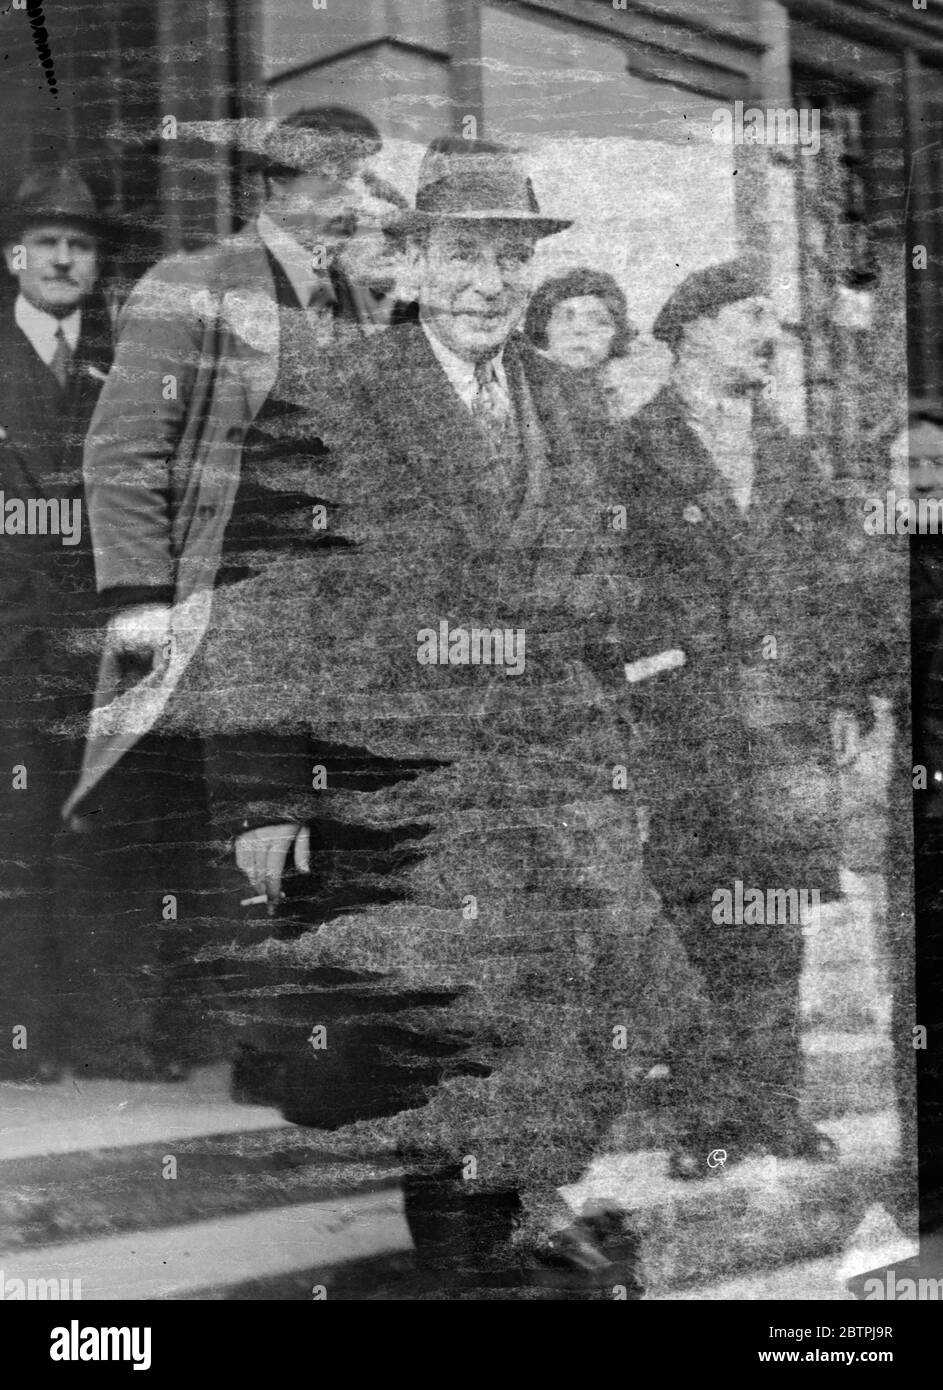 Fragesteller in Stawisky Anfrage . M Albert Dubarry, der im Zusammenhang mit dem Stavisky-Skandal in Frankreich verhaftet wurde, wurde in Bayonne vom Untersuchungsrichter wegen von Stavisky an ihn gezahlter Beträge befragt. Foto zeigt ; M Dubarry geht nach seinem Verhör. 16. Januar 1934 30er, 30er, 30er, 30er, 30er, 30er Jahre Stockfoto